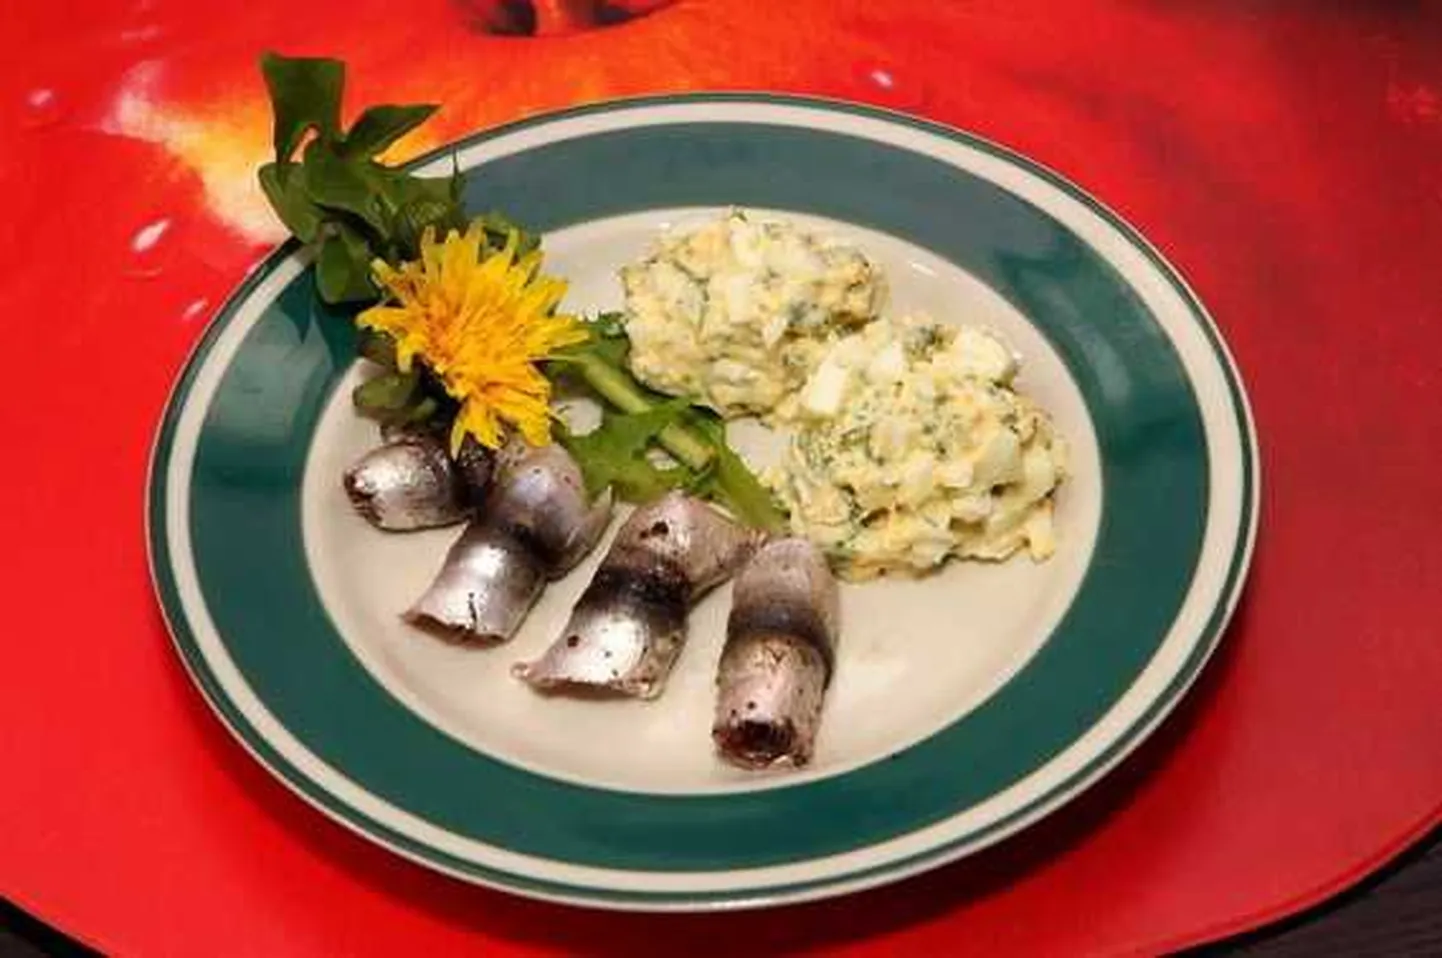 Eestlased söövad võrreldes skandinaavlastega vähe kalatooteid. Pildil kilu ja salat.